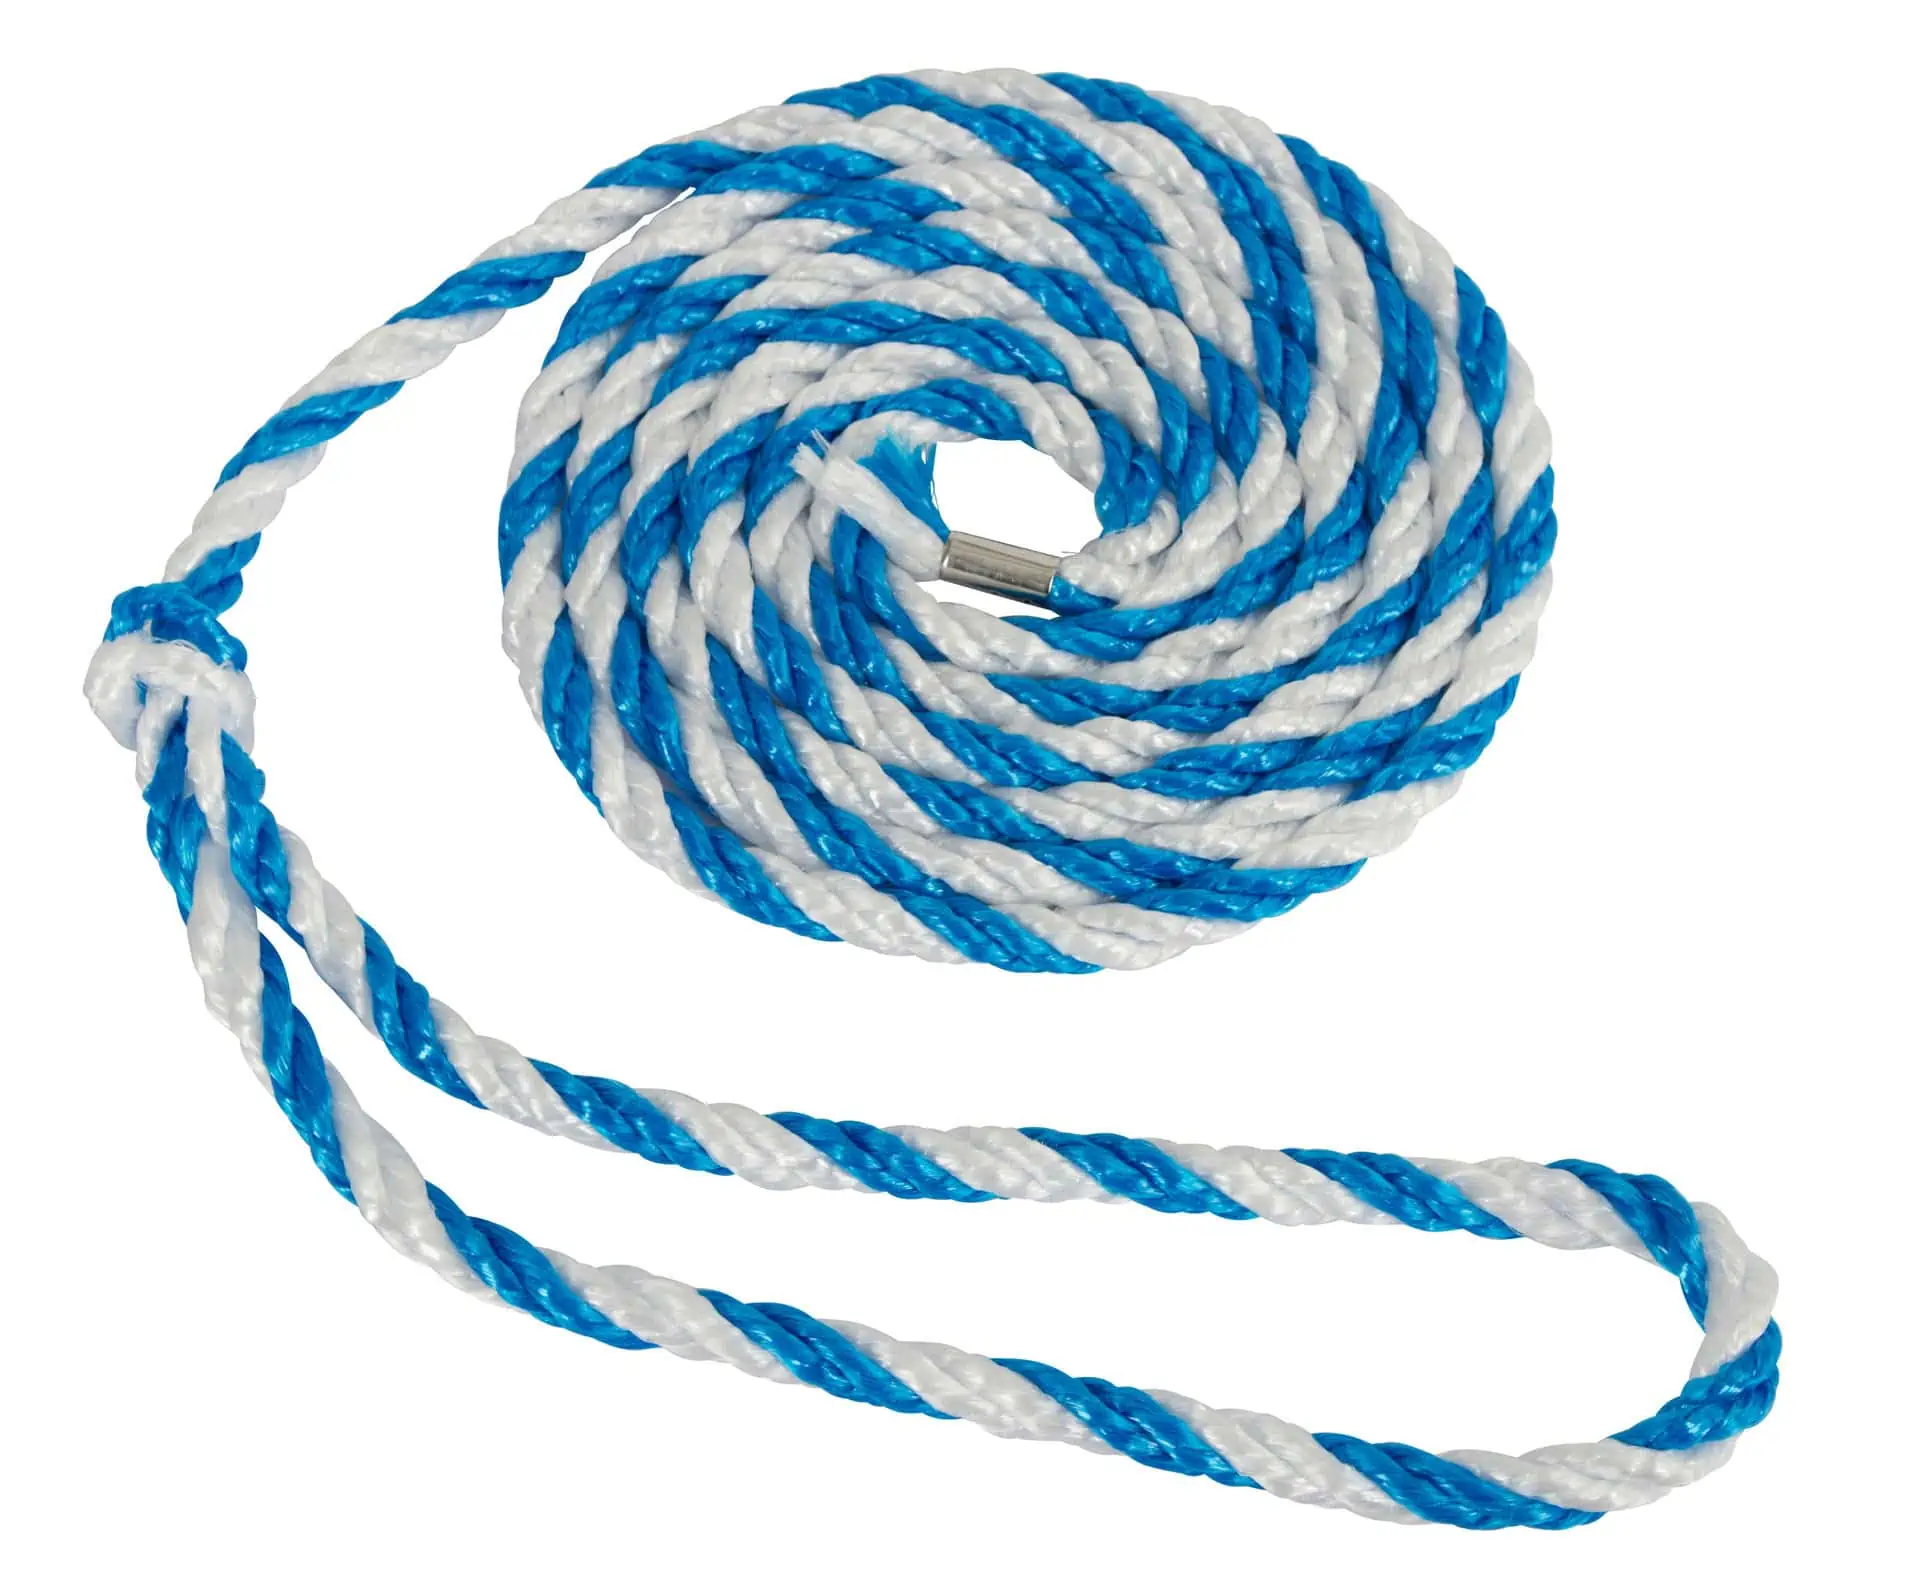 Livestock transport rope,large end loop, 320cm, blue/white